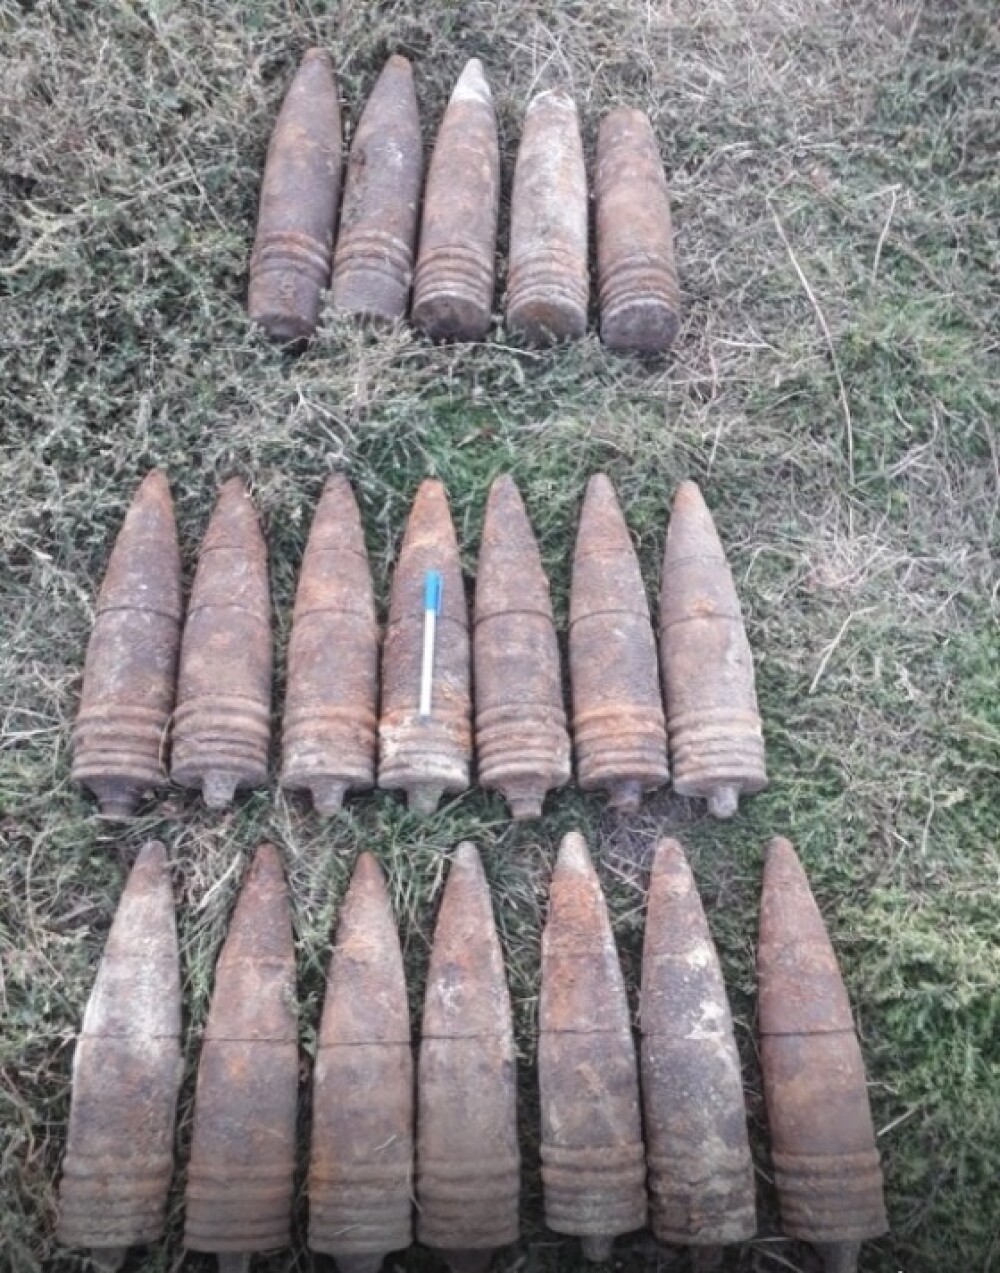 Zeci de proiectile, gloanţe şi cartuşe, descoperite în cimitirul din Bârlad. De unde provin - Imaginea 1